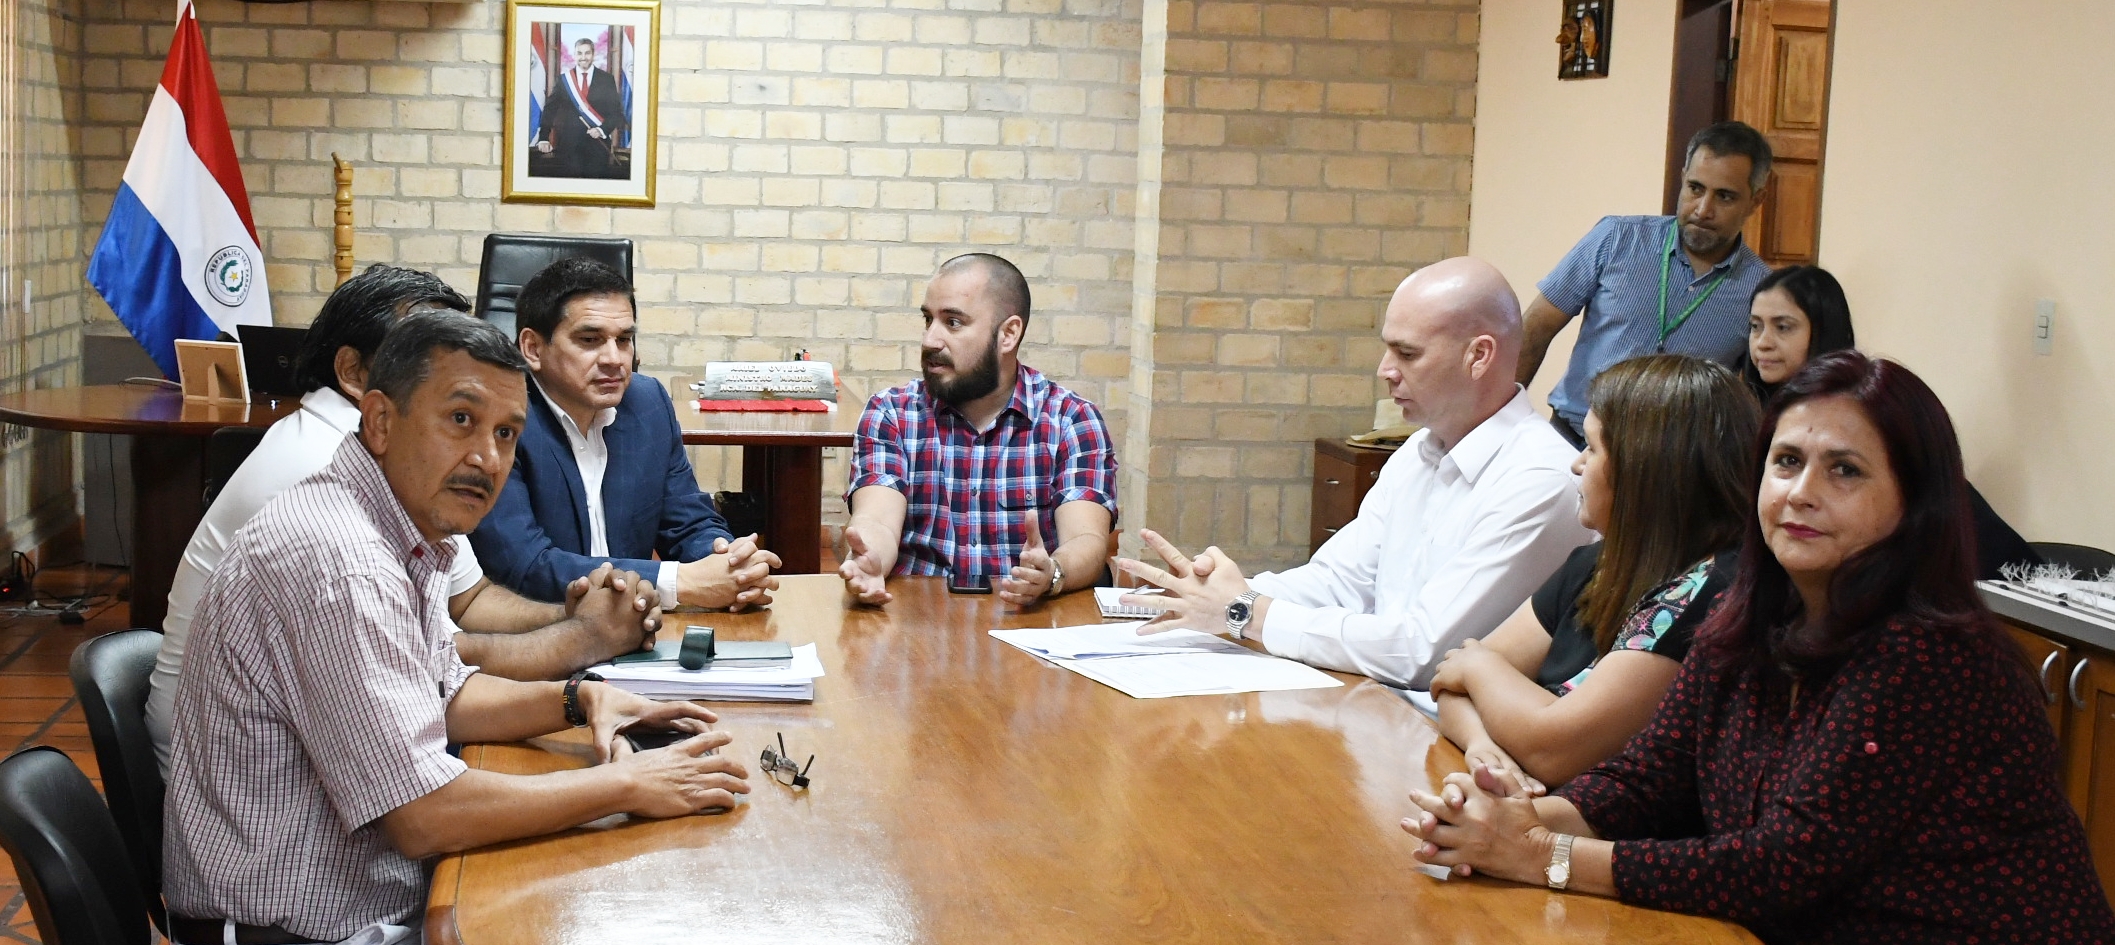 Ministro aclaró dudas sobre proyecto de Vertedero en Yaguarón